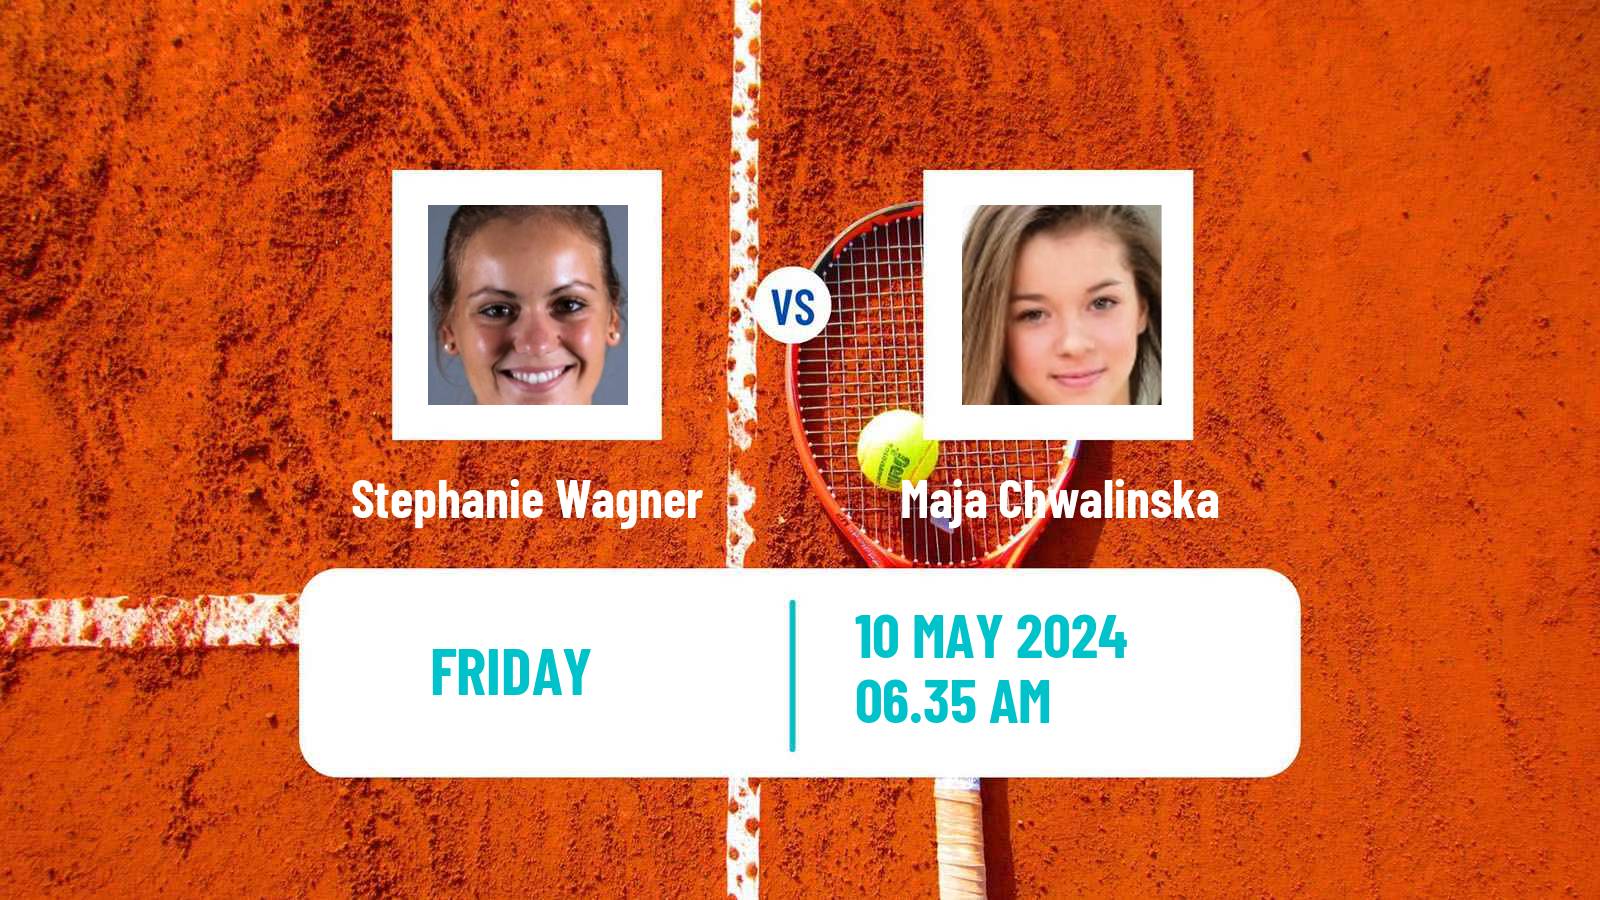 Tennis ITF W75 Prague Women Stephanie Wagner - Maja Chwalinska